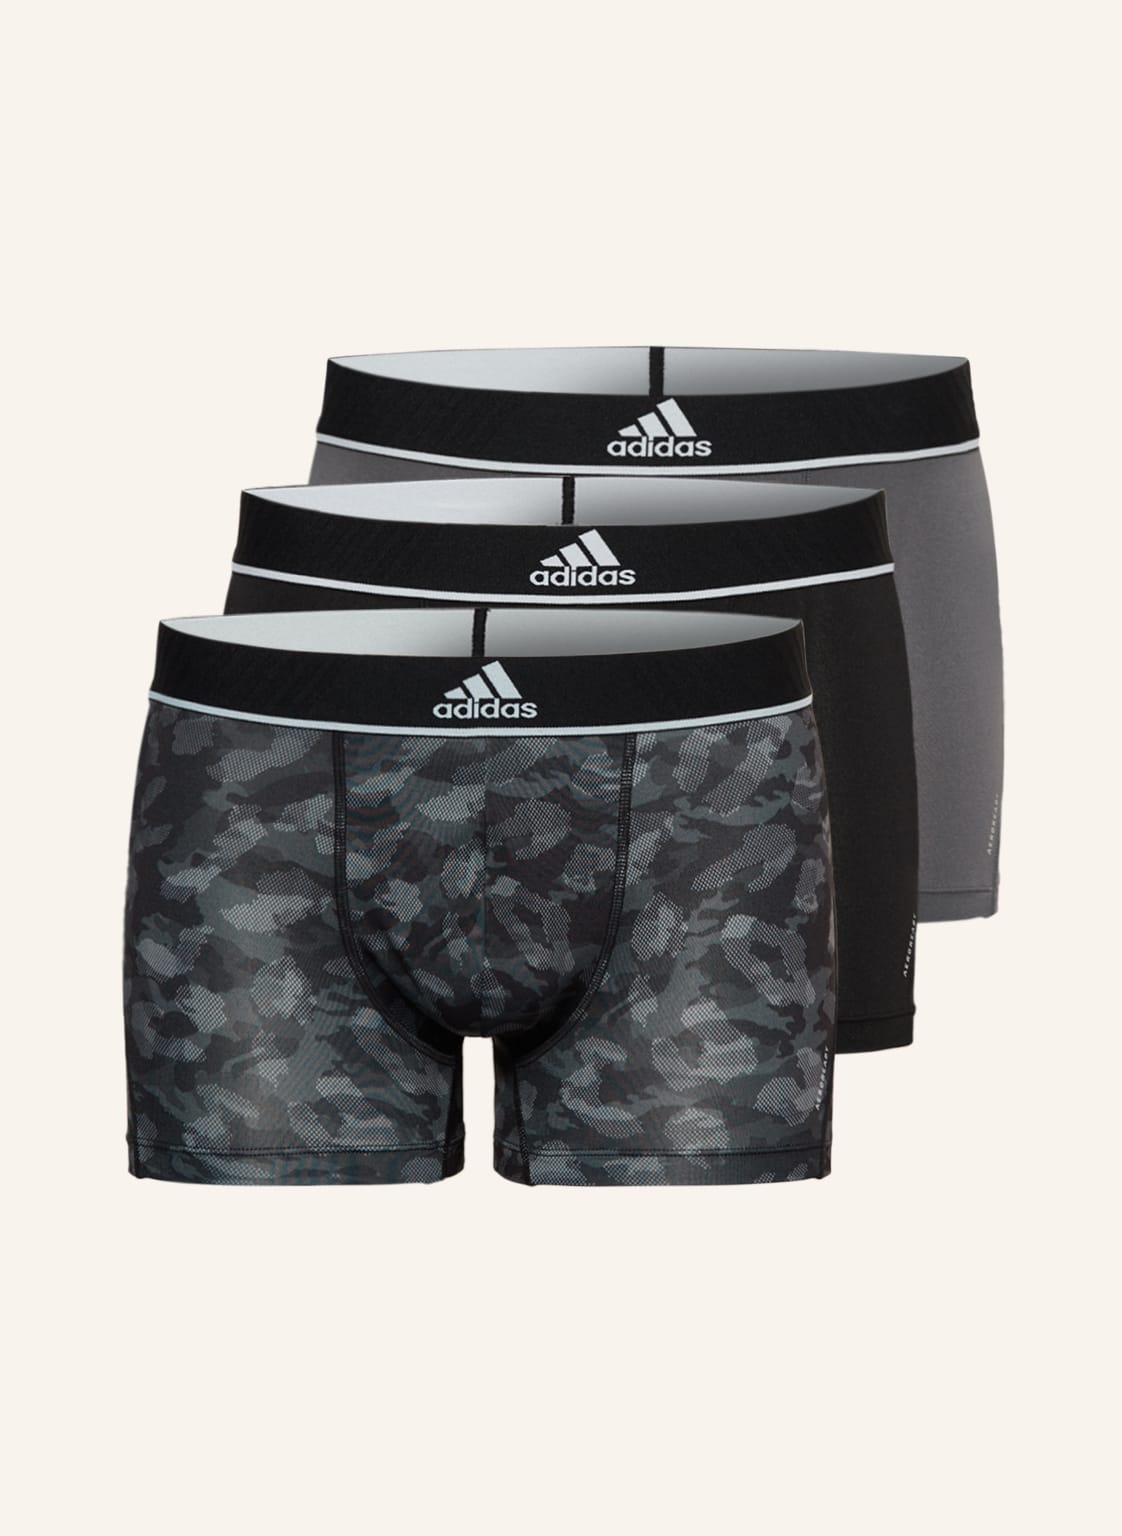 Image of Adidas 3er-Pack Boxershorts grau